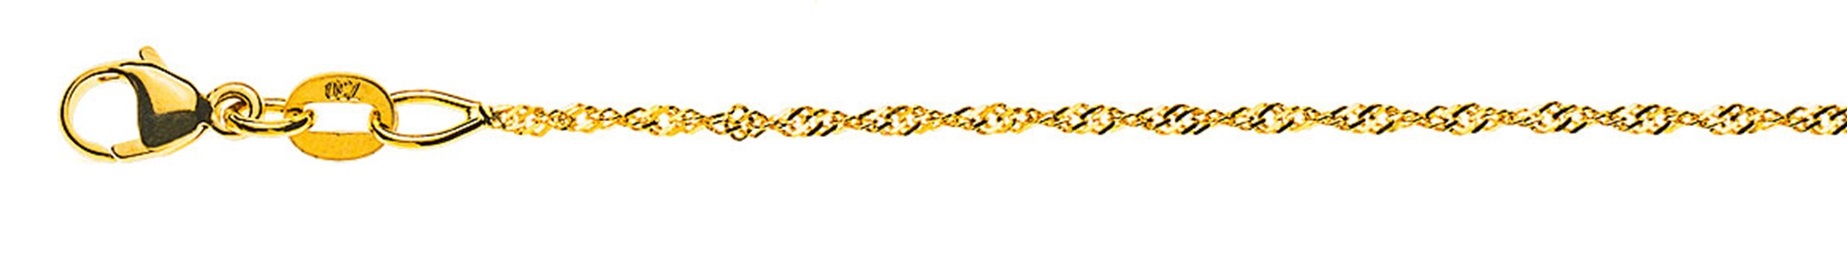 AURONOS Prestige Necklace Yellow Gold 18K Singapore Chain 60cm 1.2mm